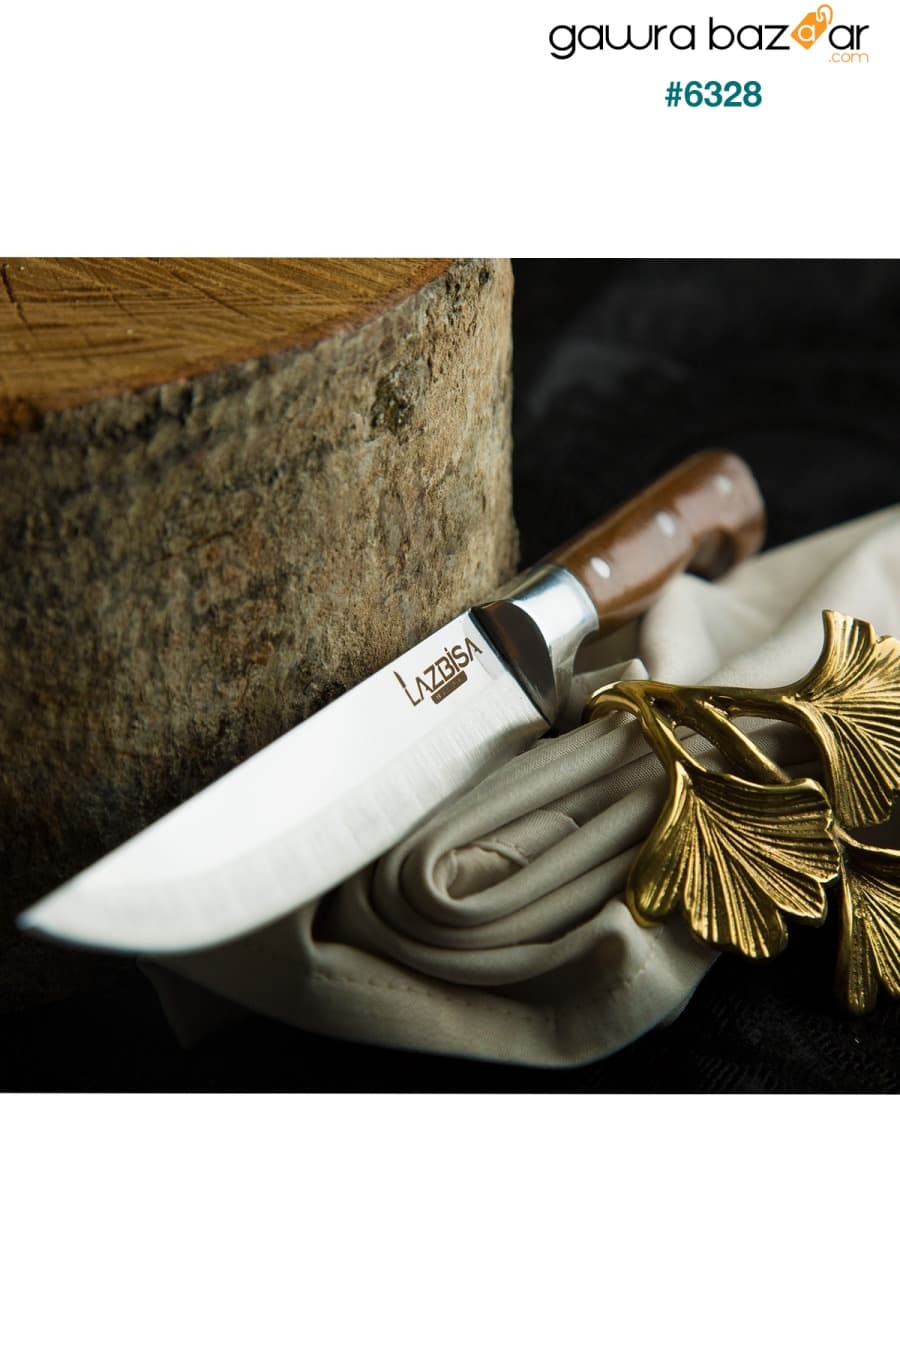 طقم سكاكين مطبخ - سكاكين خبز اللحوم والفواكه والخضروات - 6 قطع (1-2-3) LAZBİSA 2